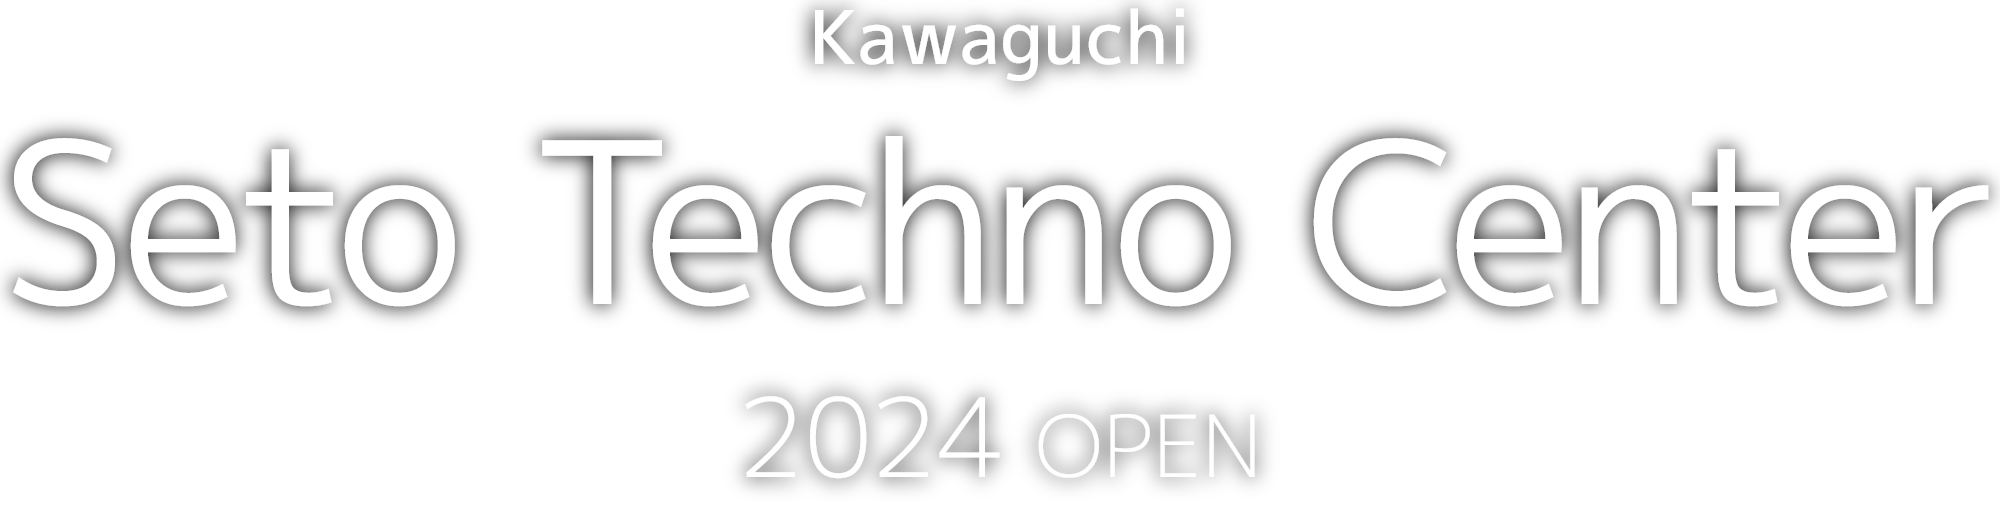 Kawaguchi Seto Techno Center 2024 Open